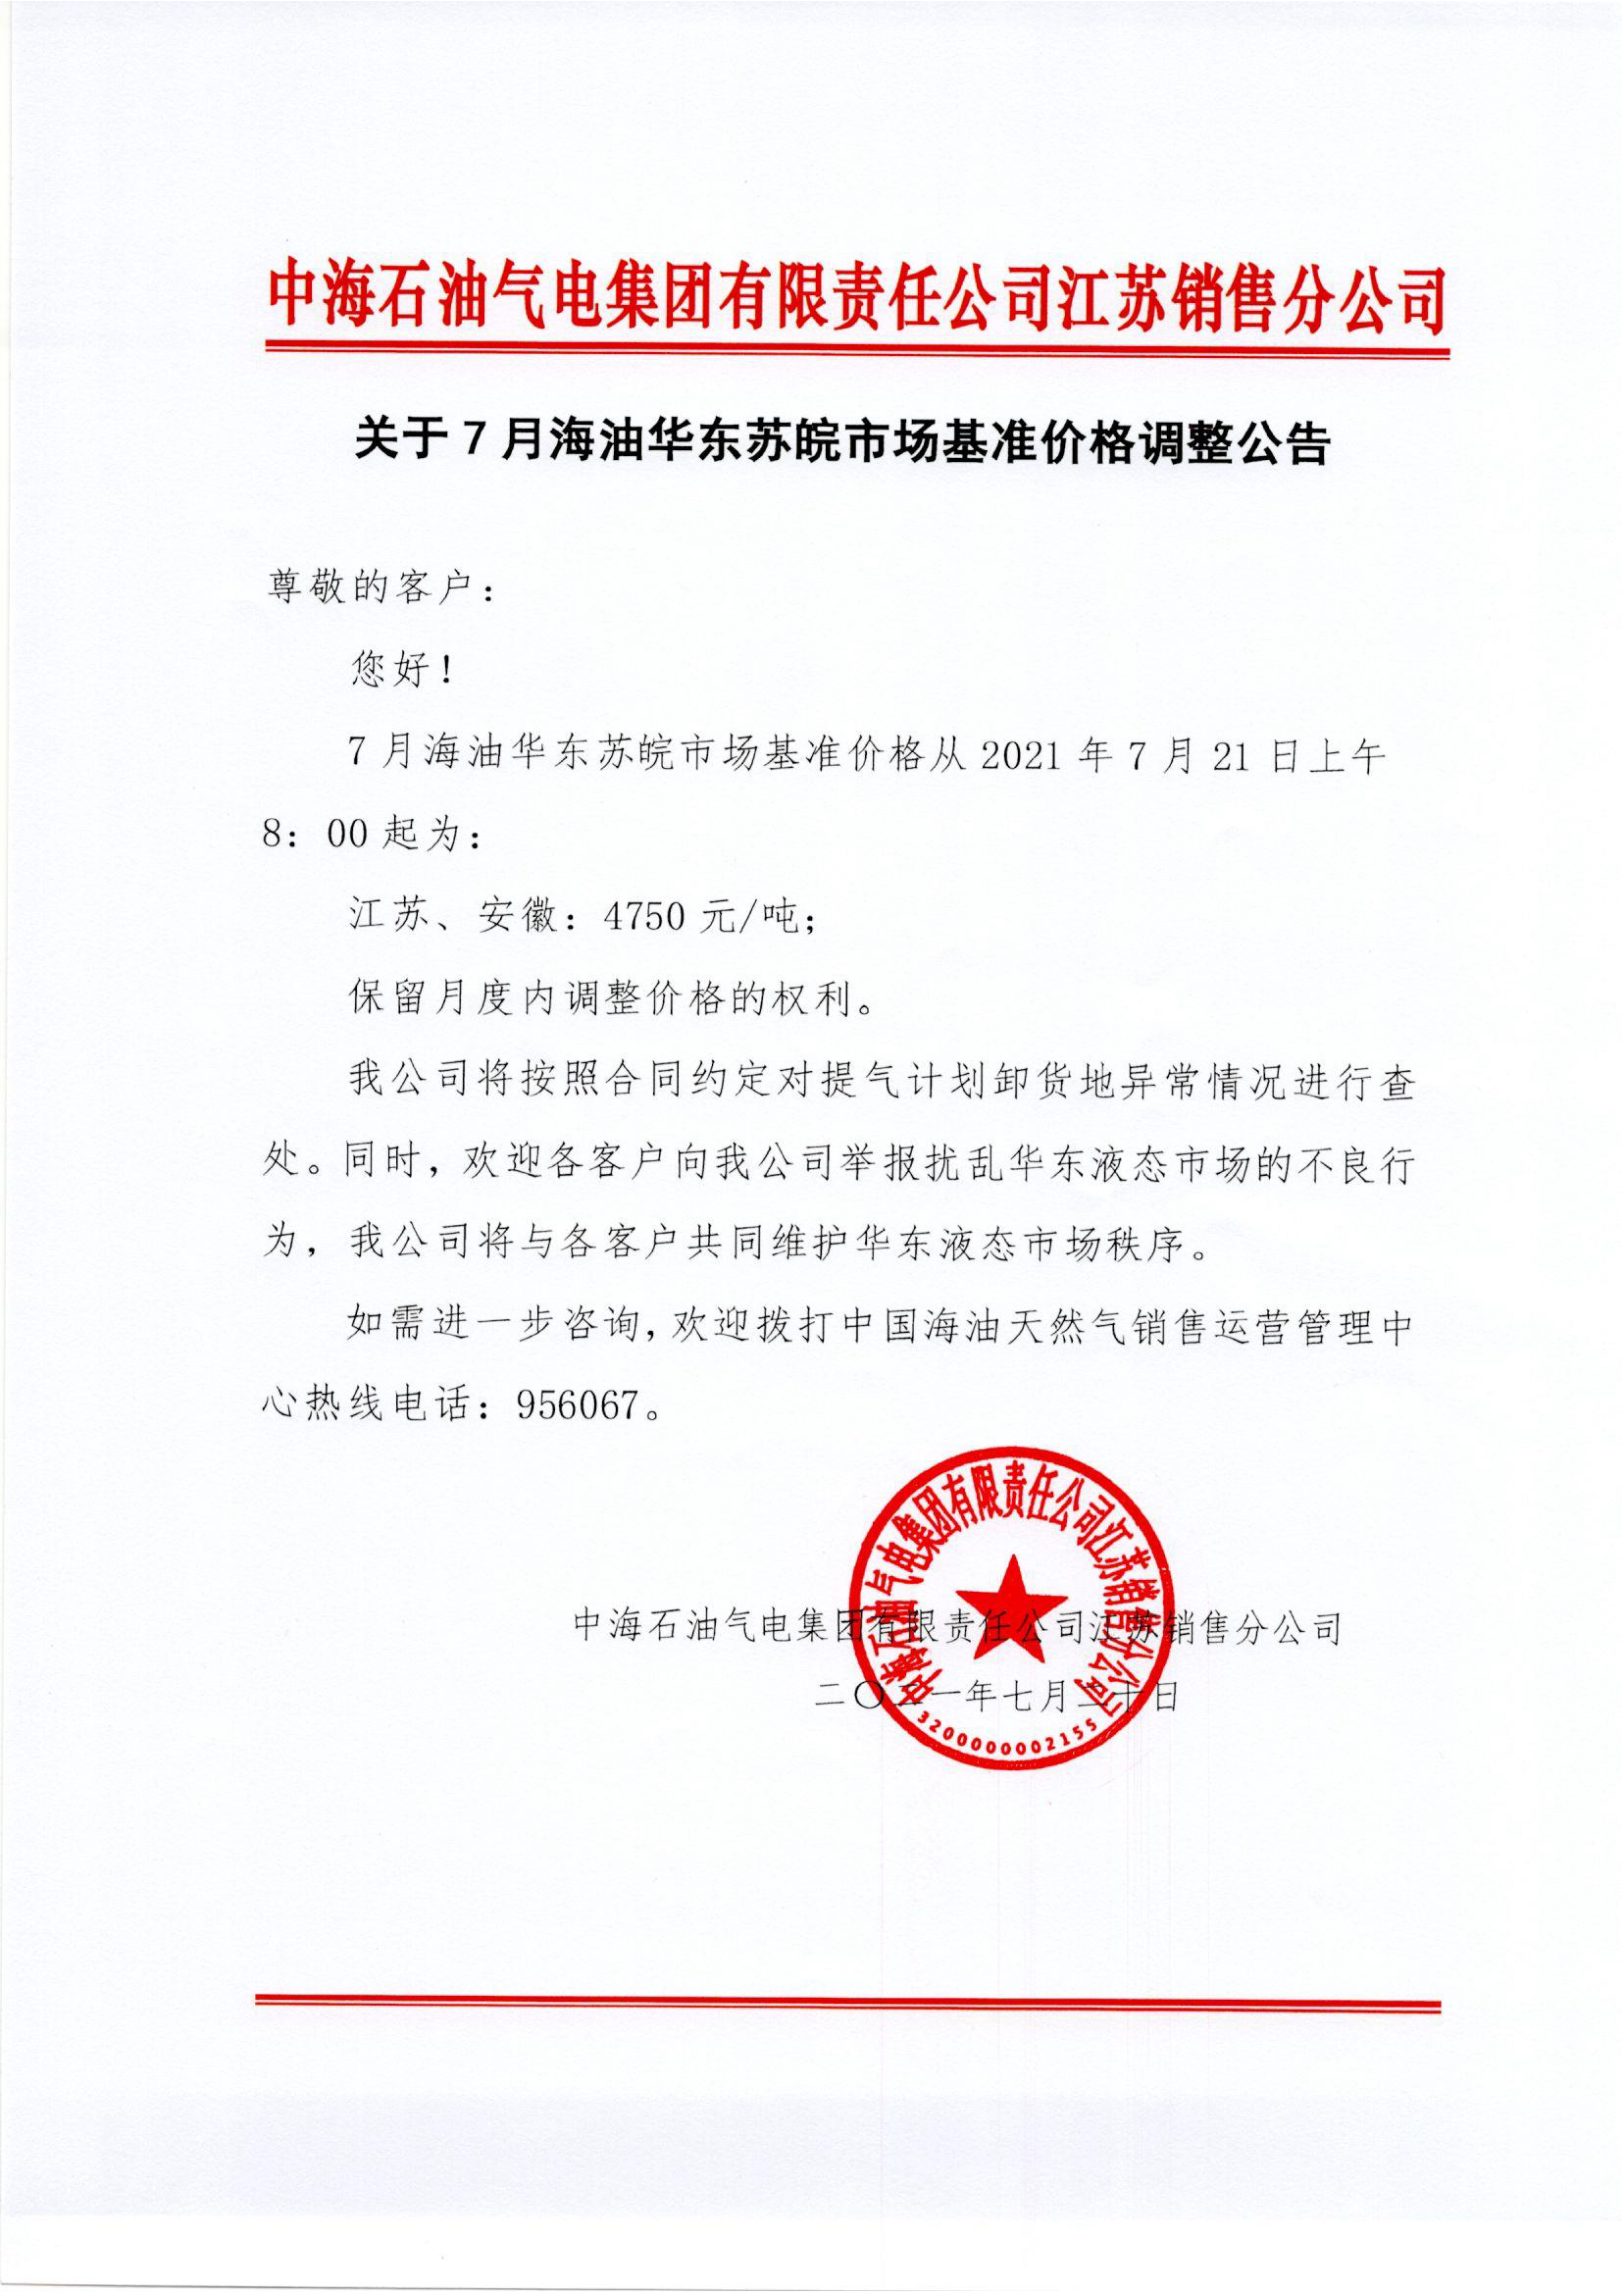 中海油苏销关于7月21日华东苏皖市场价格调整公告0721.png